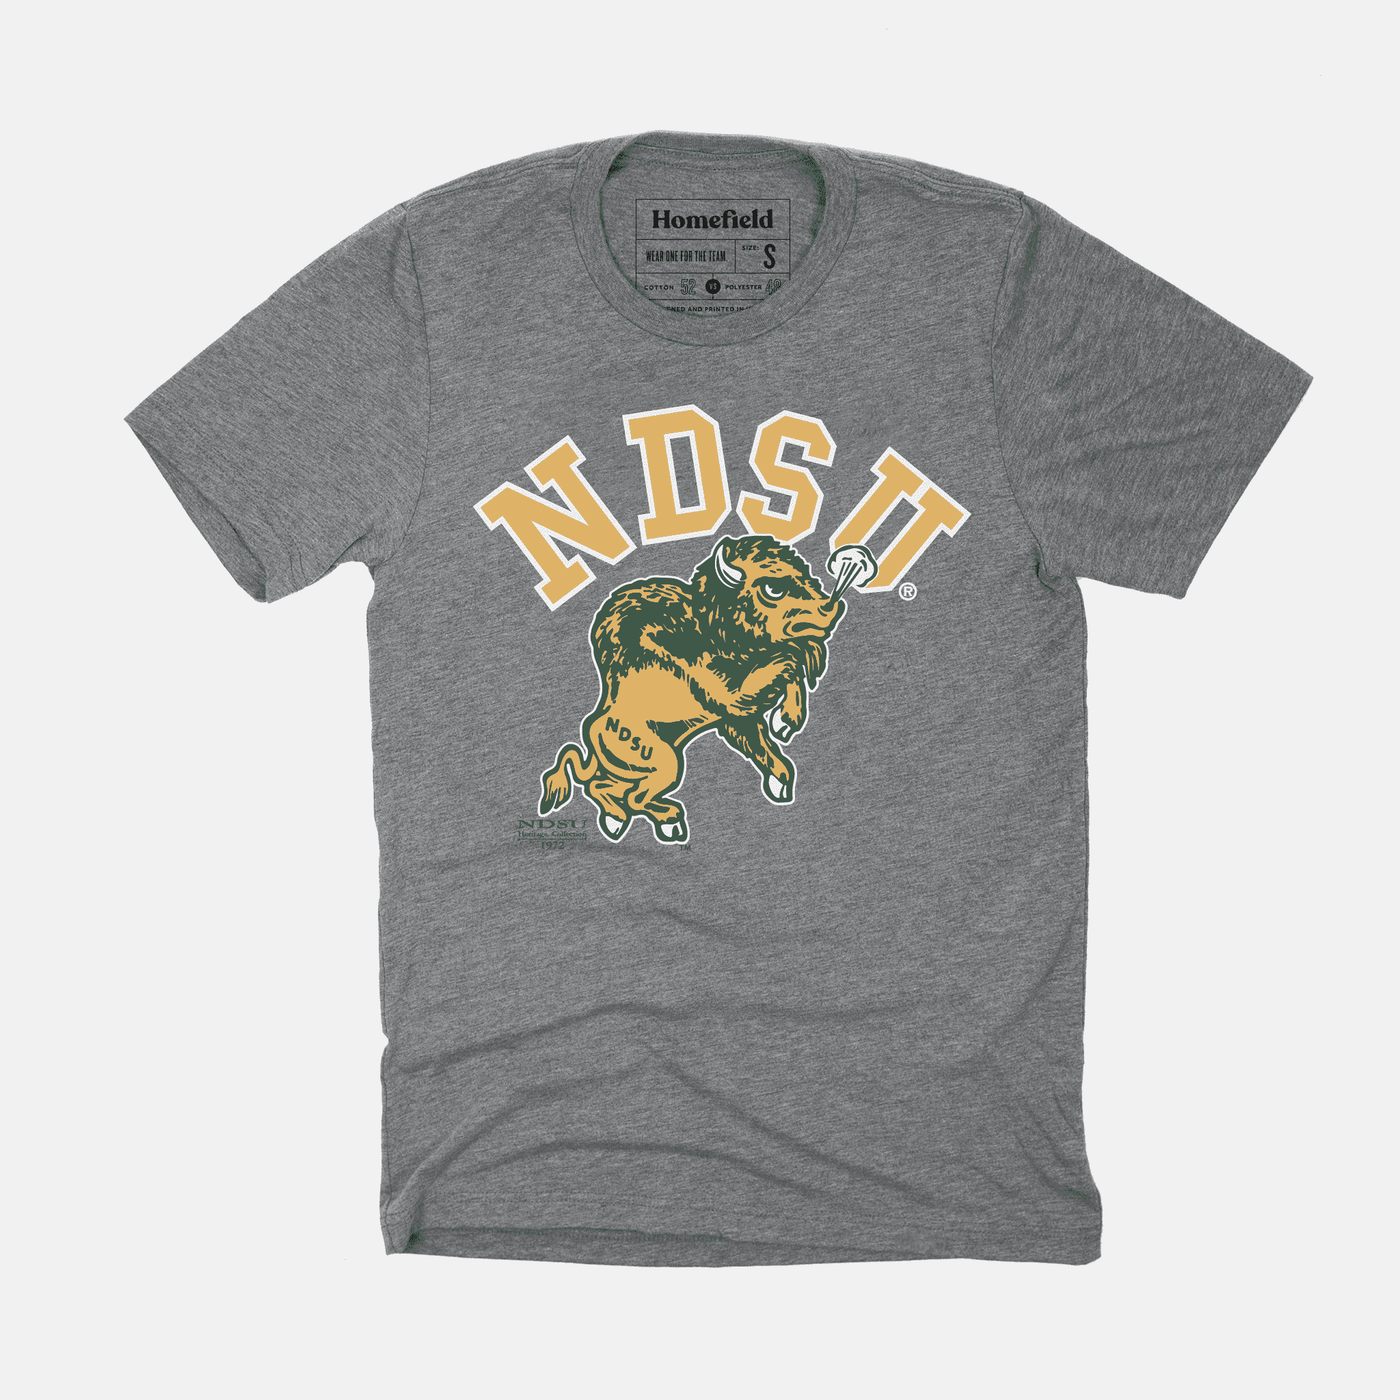 vintage NDSU bison shirt